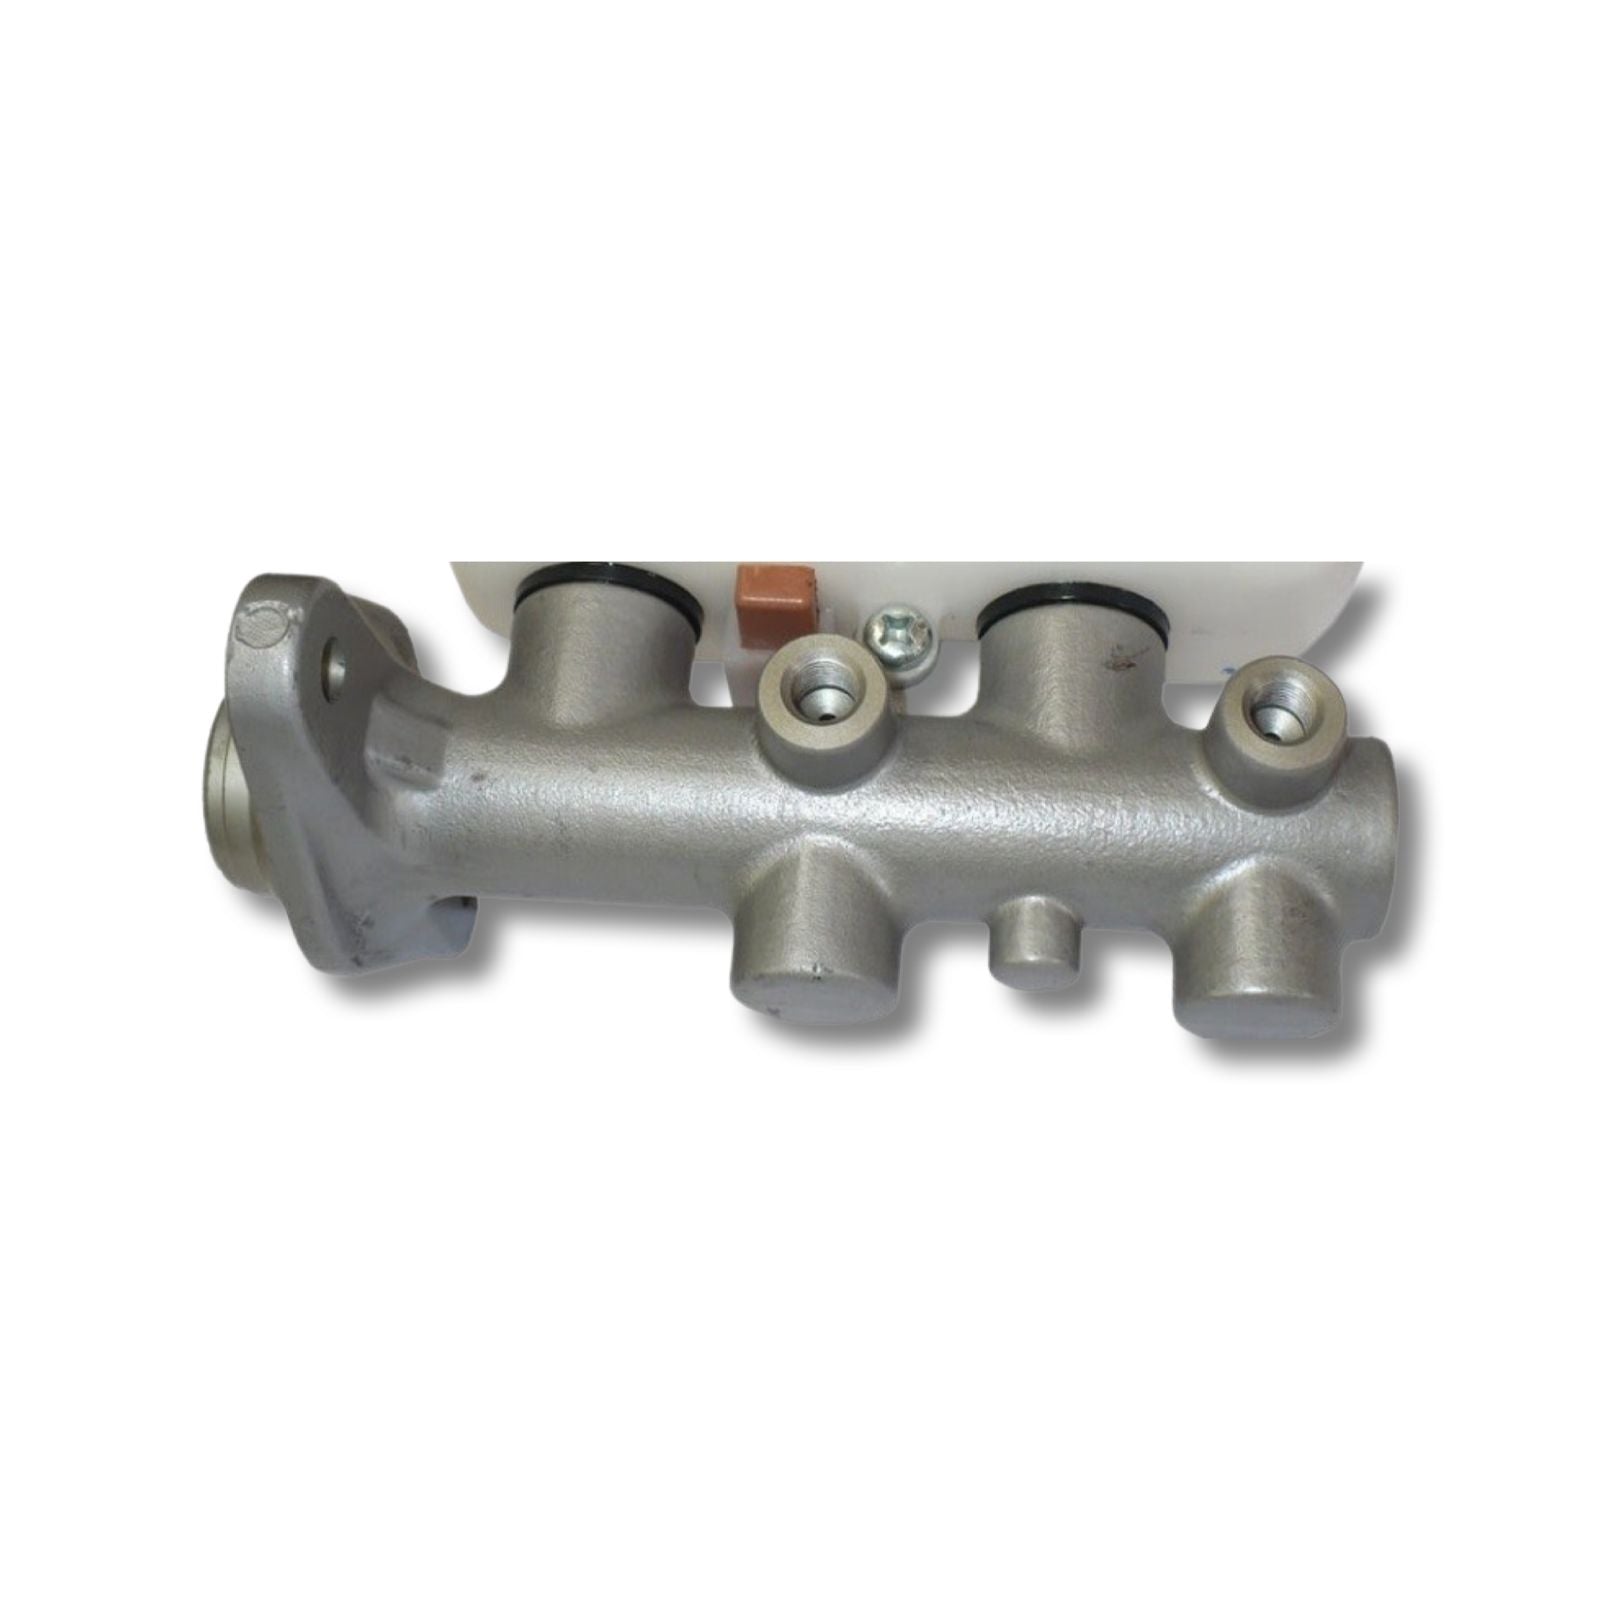 Brake Master Cylinder Hyundai Getz 1.4, 1.5, 1.6 (06-12)(Abs) - NO RESERVOIR